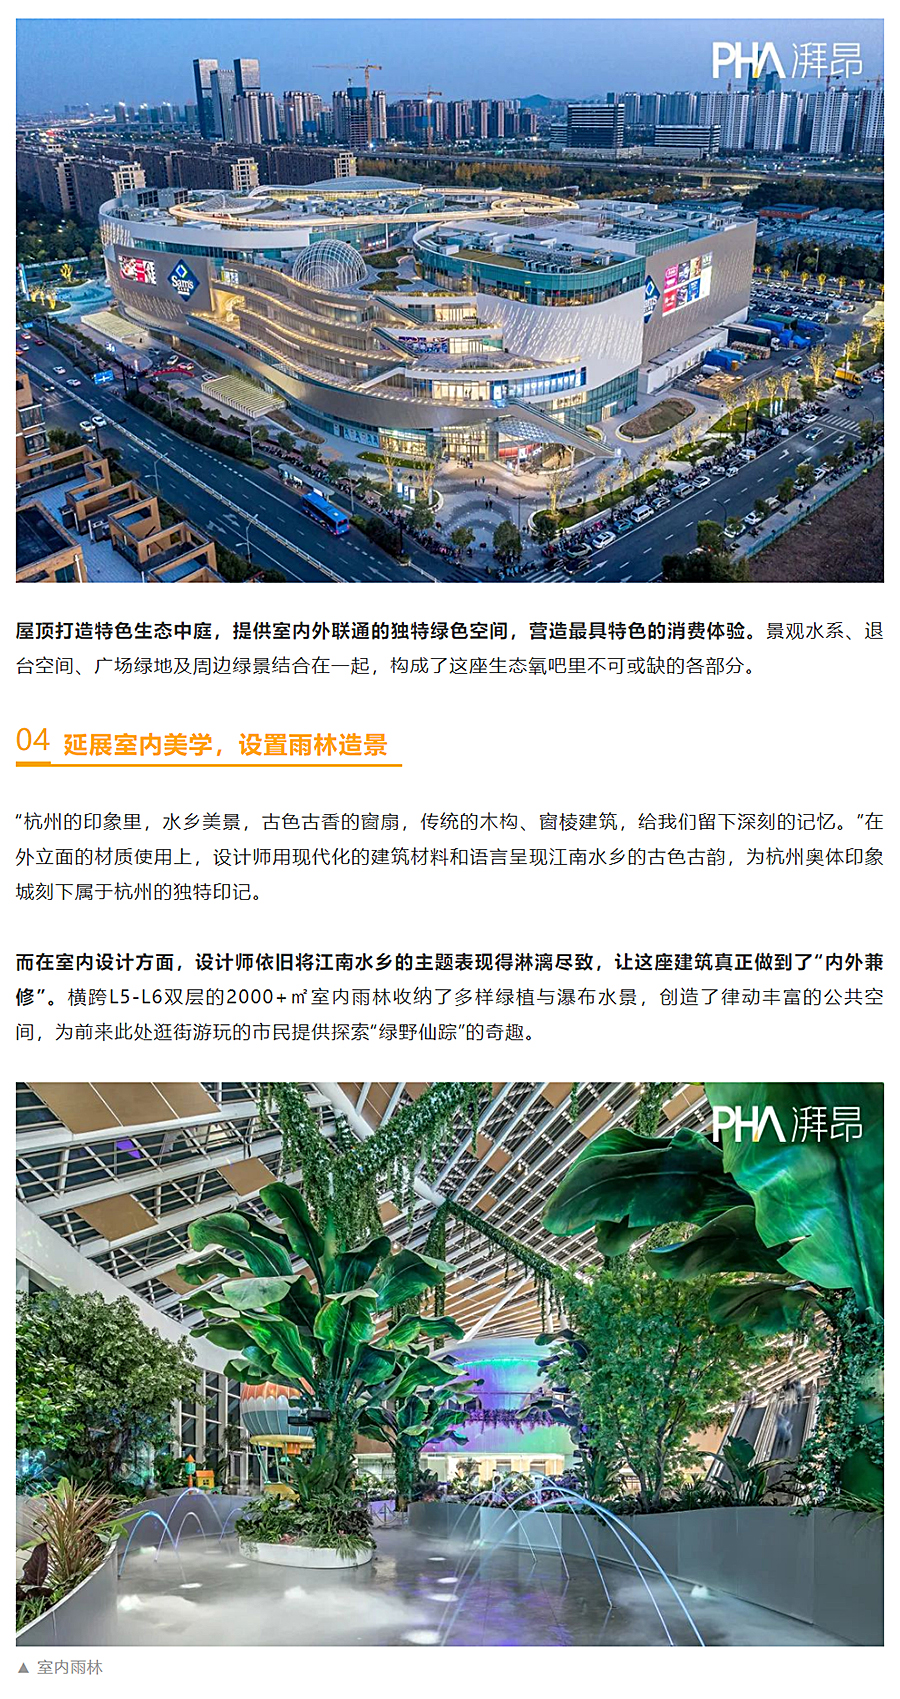 现实版“天空之城”-_-印力汇德隆-杭州奥体印象城_0003_图层-4 拷贝.jpg